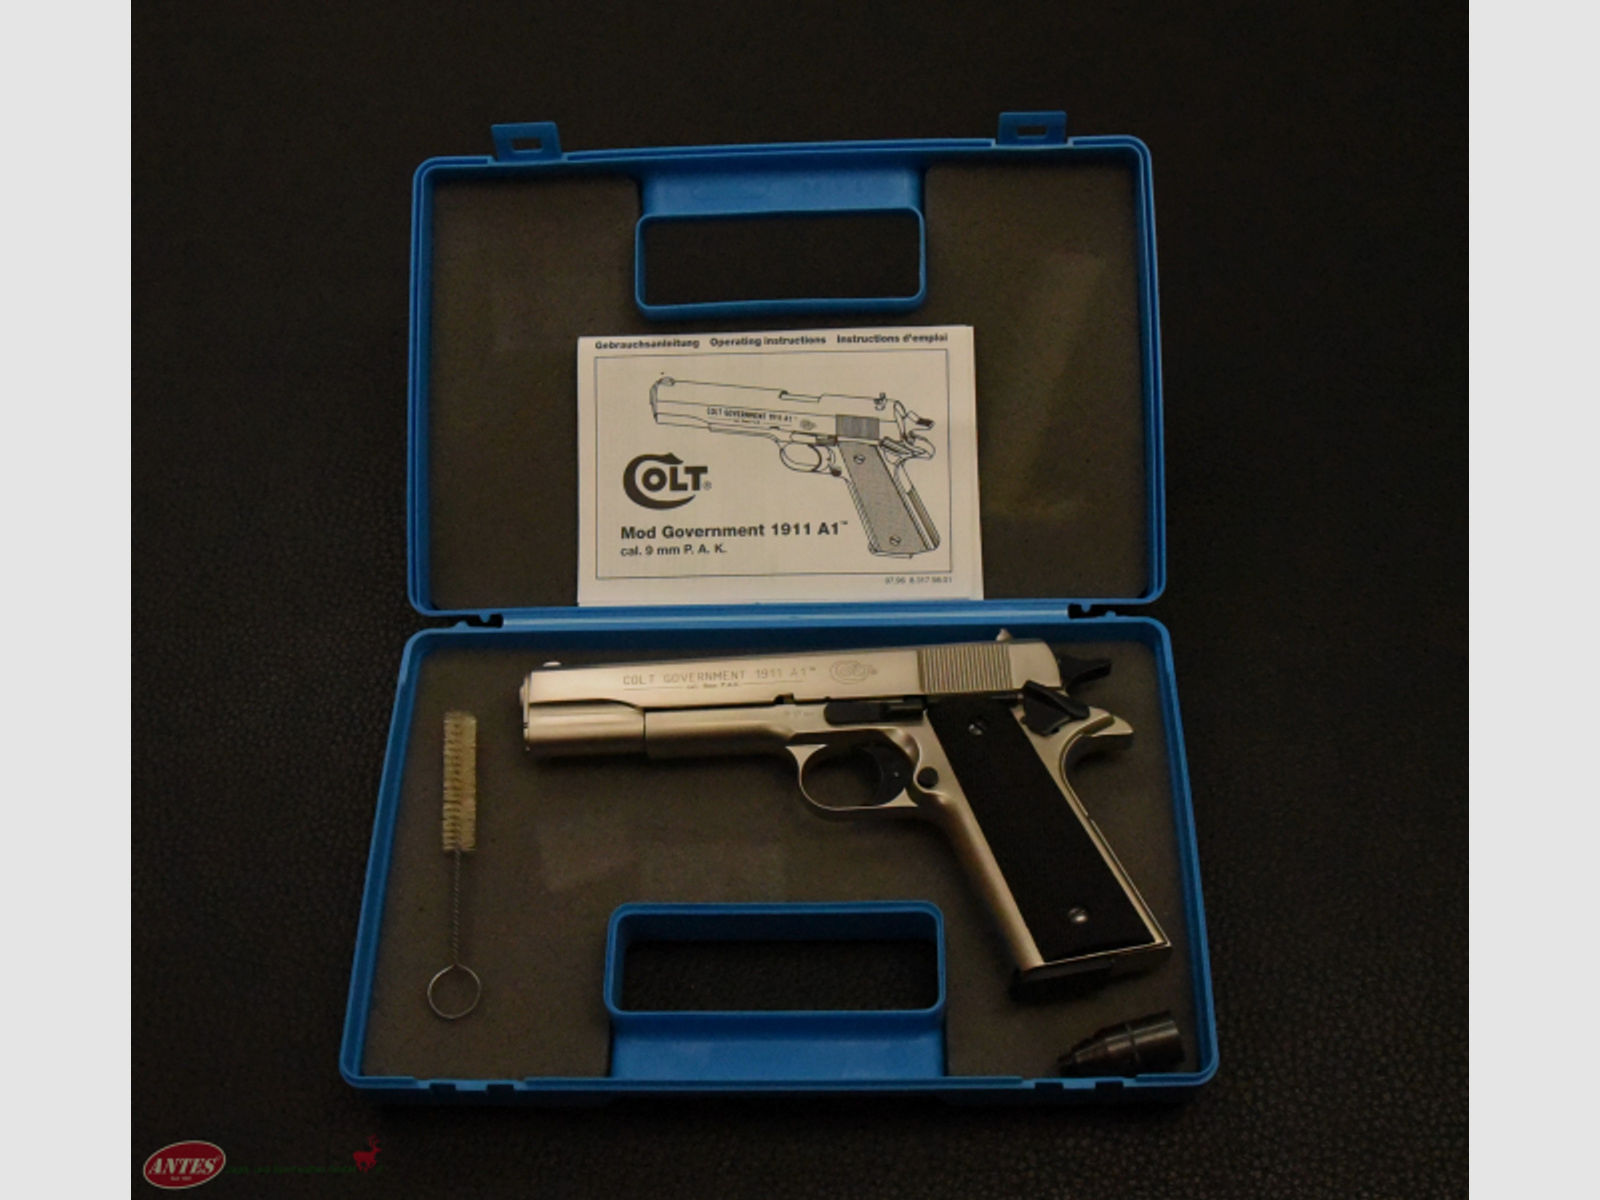 Umarex: Schreckschuss-Pistole Colt Mod. Government 1911 A1 vernickelt (PTB 638), Kal. 9 mm P.A.K.